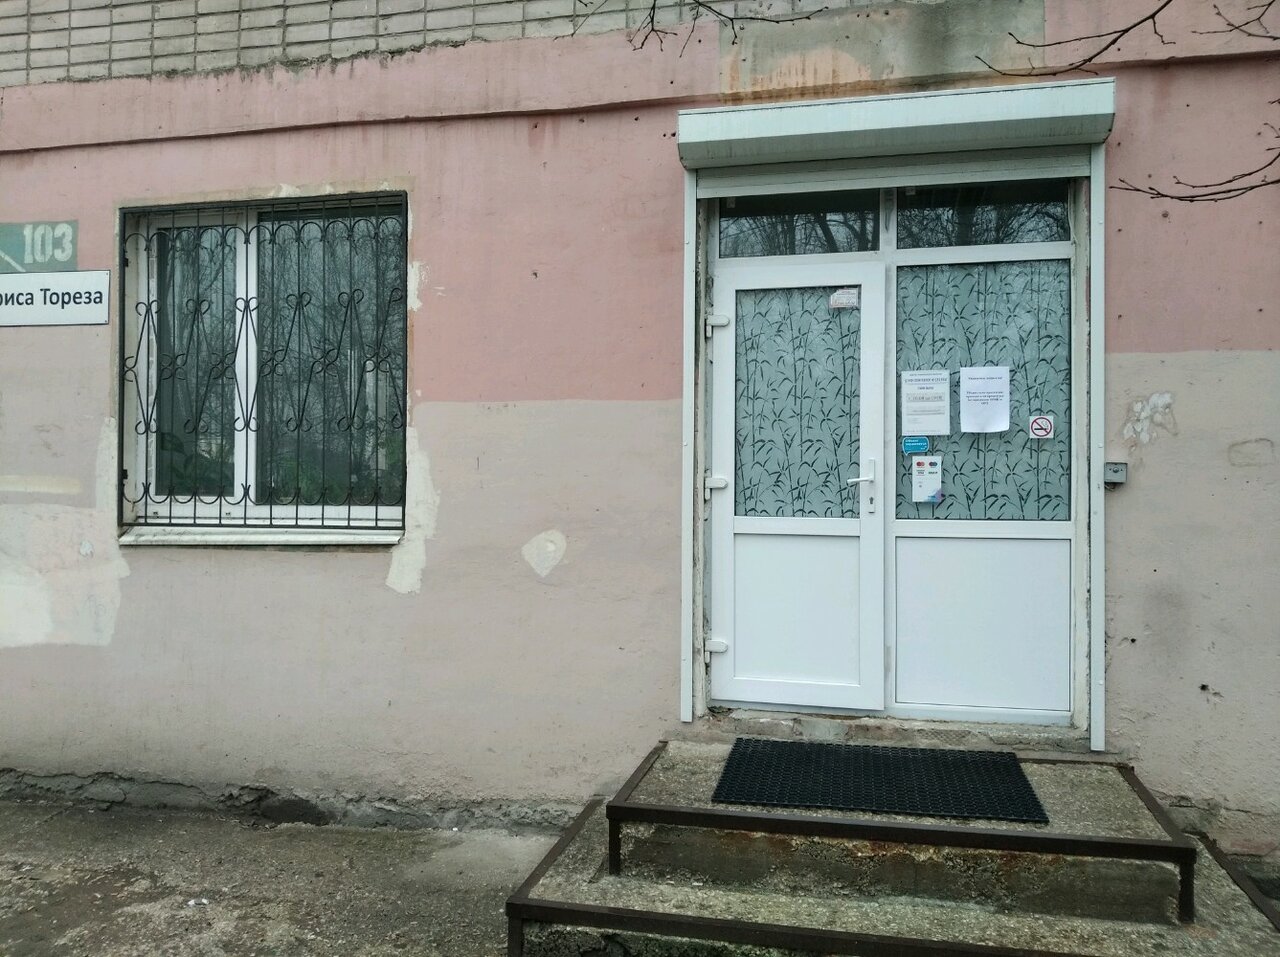 Мориса тореза 103 рус клиника телефон самара